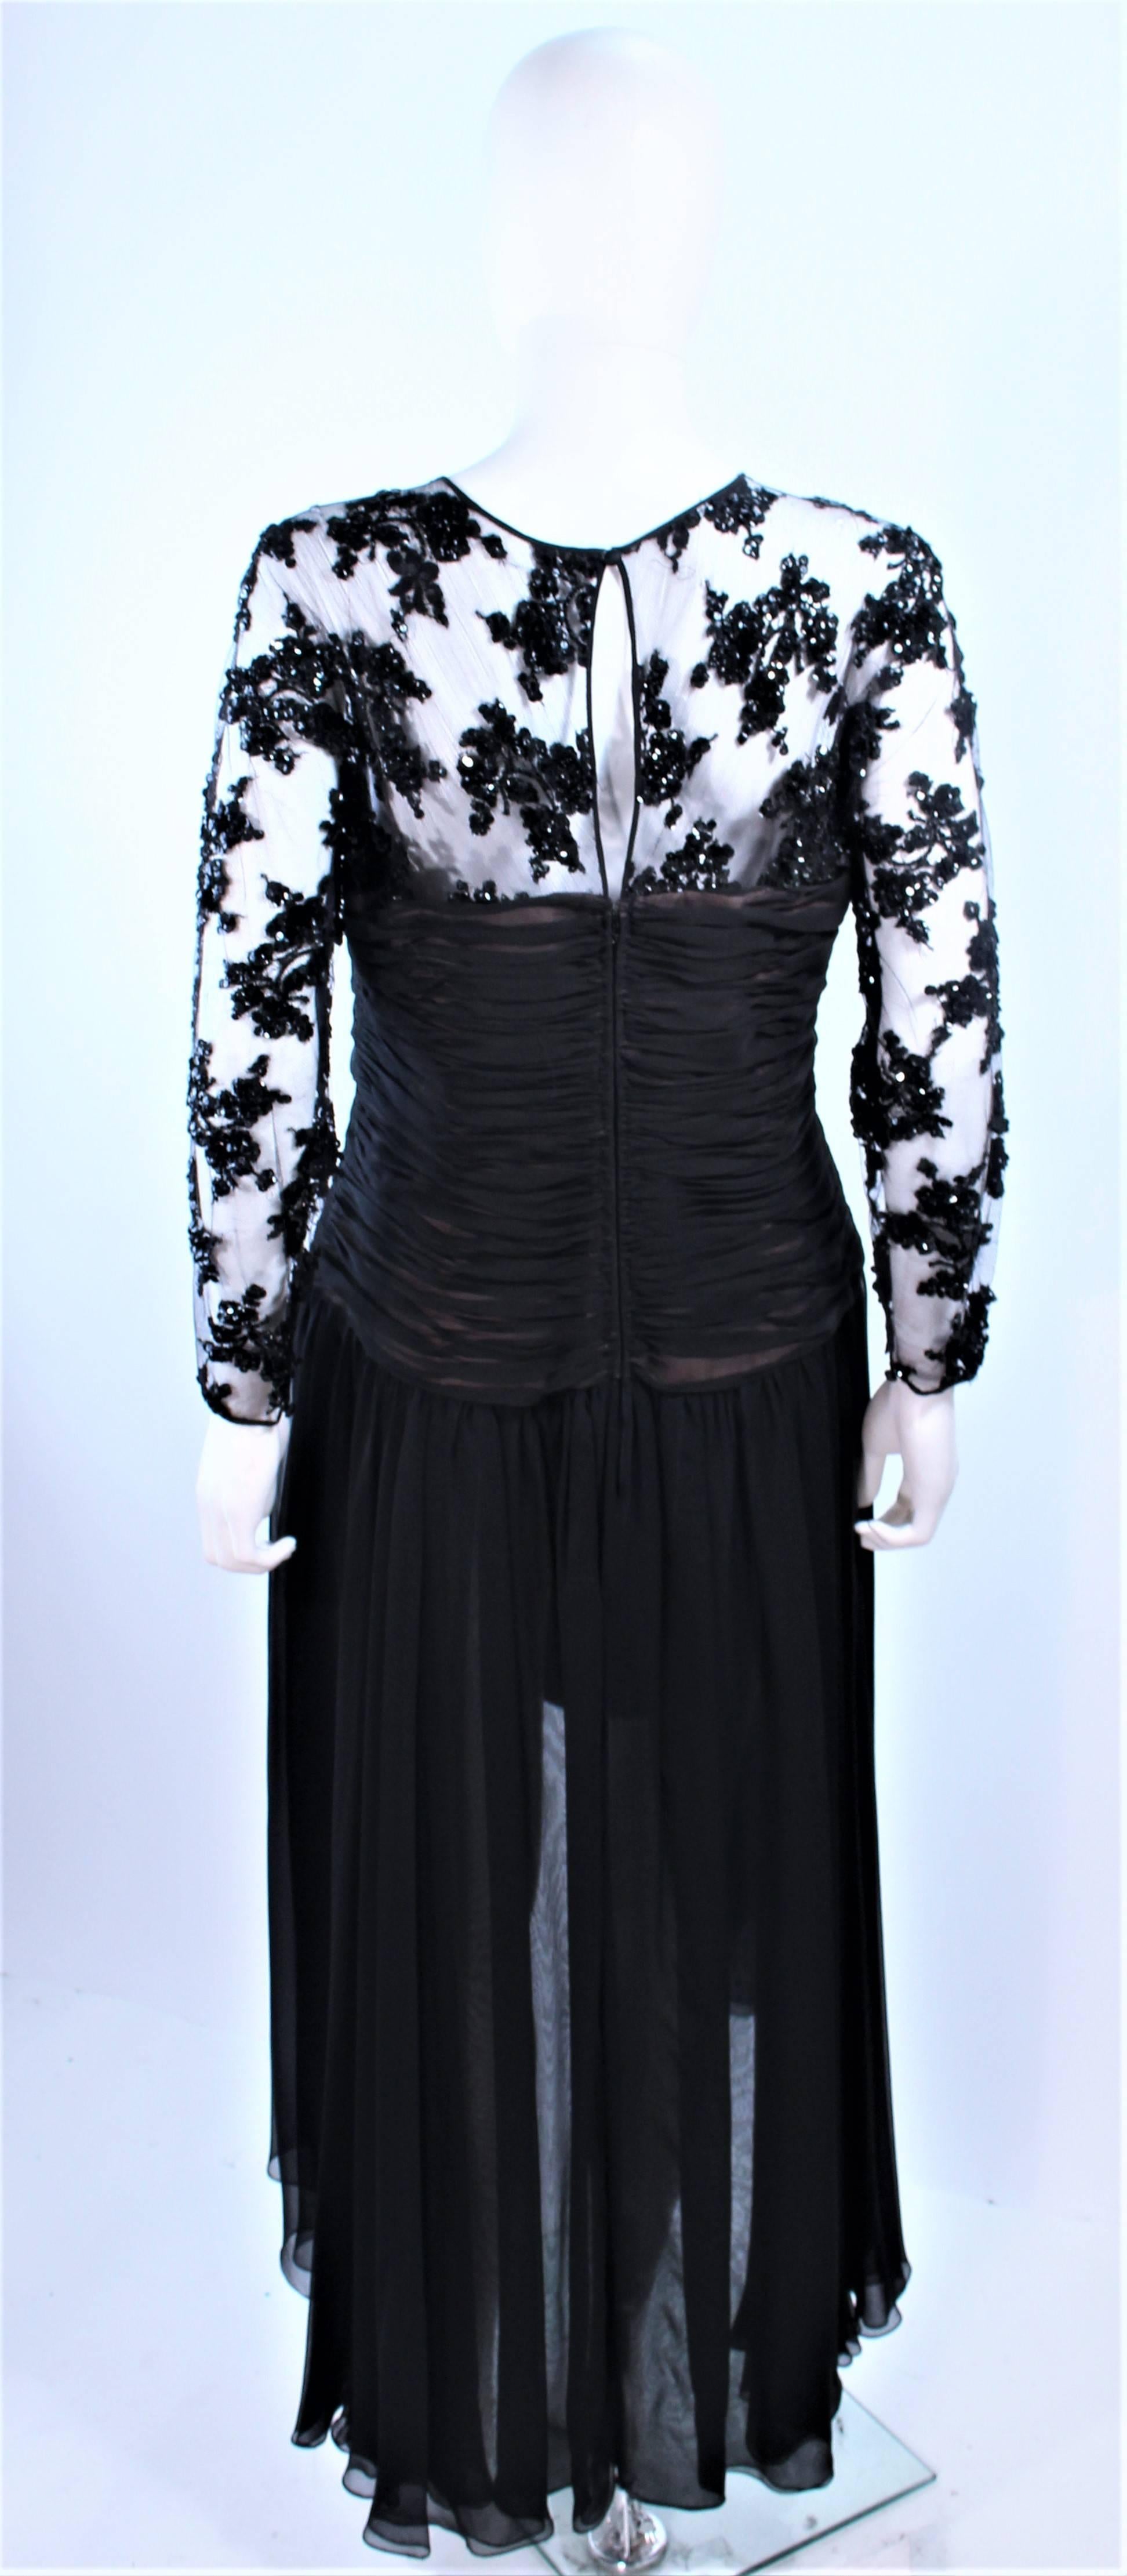 OSCAR DE LA RENTA Black Chiffon Lace High Low Cocktail Gown Size 12 14 For Sale 5